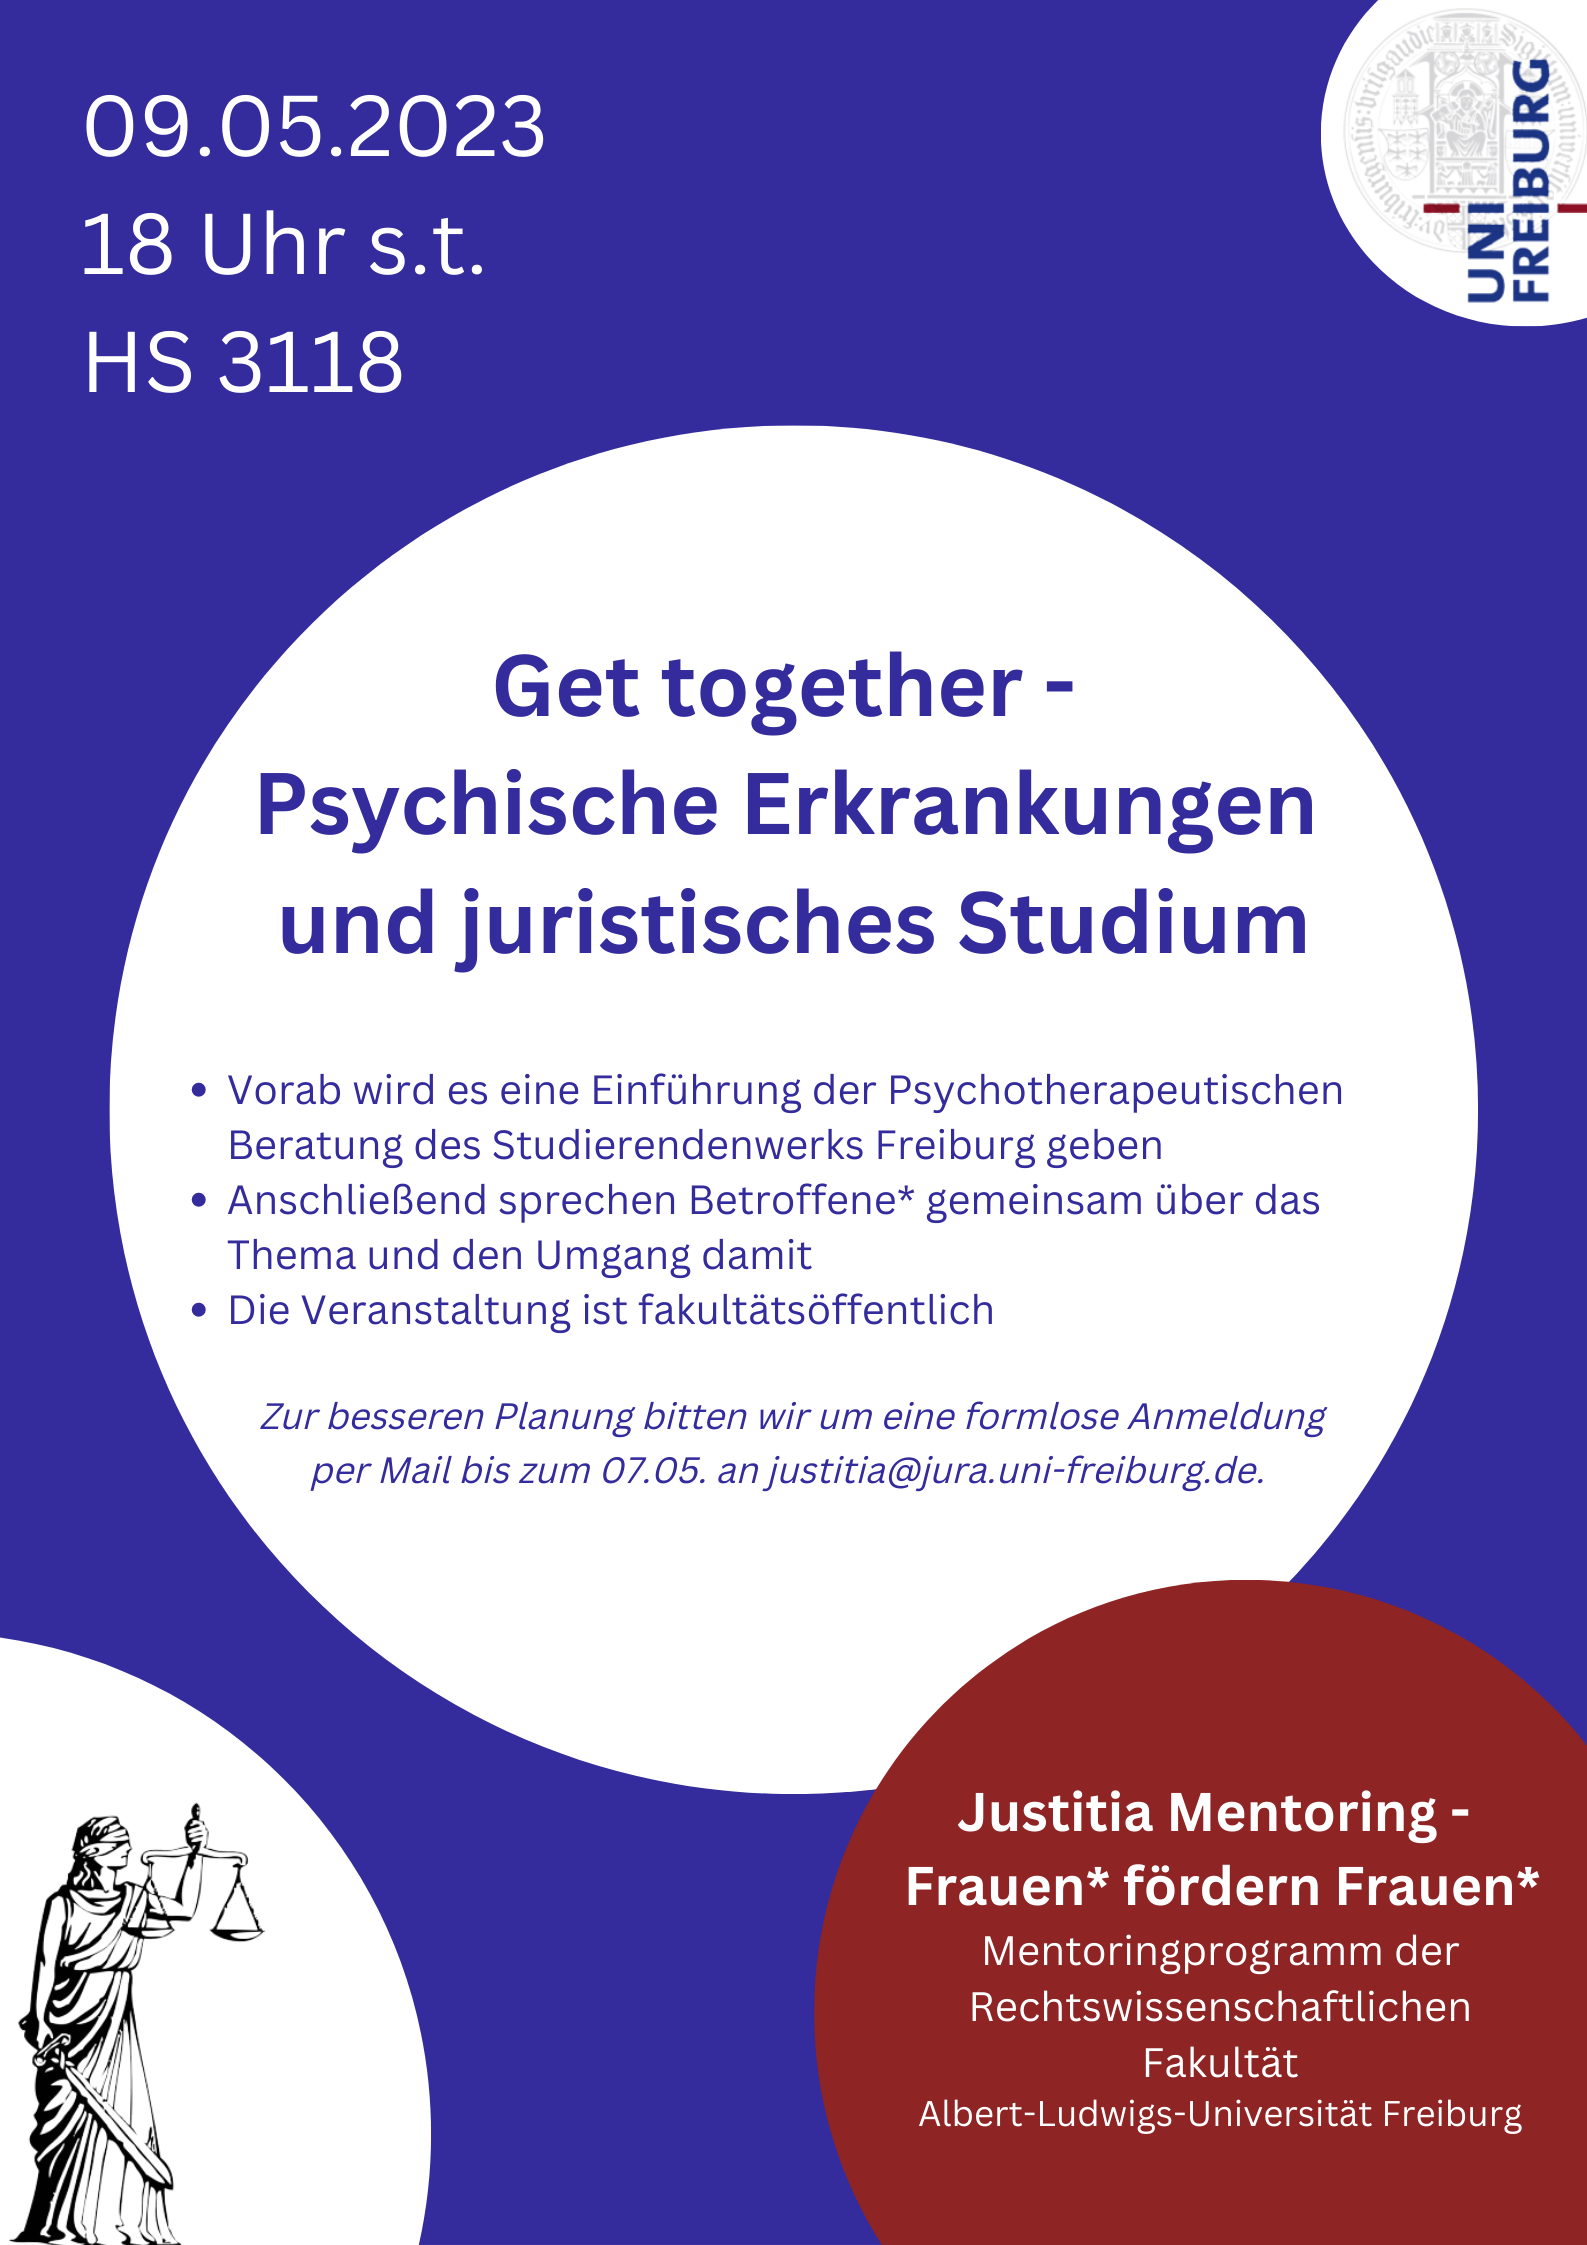 Justitia Mentoring: Jura studieren mit psychischen Erkrankungen